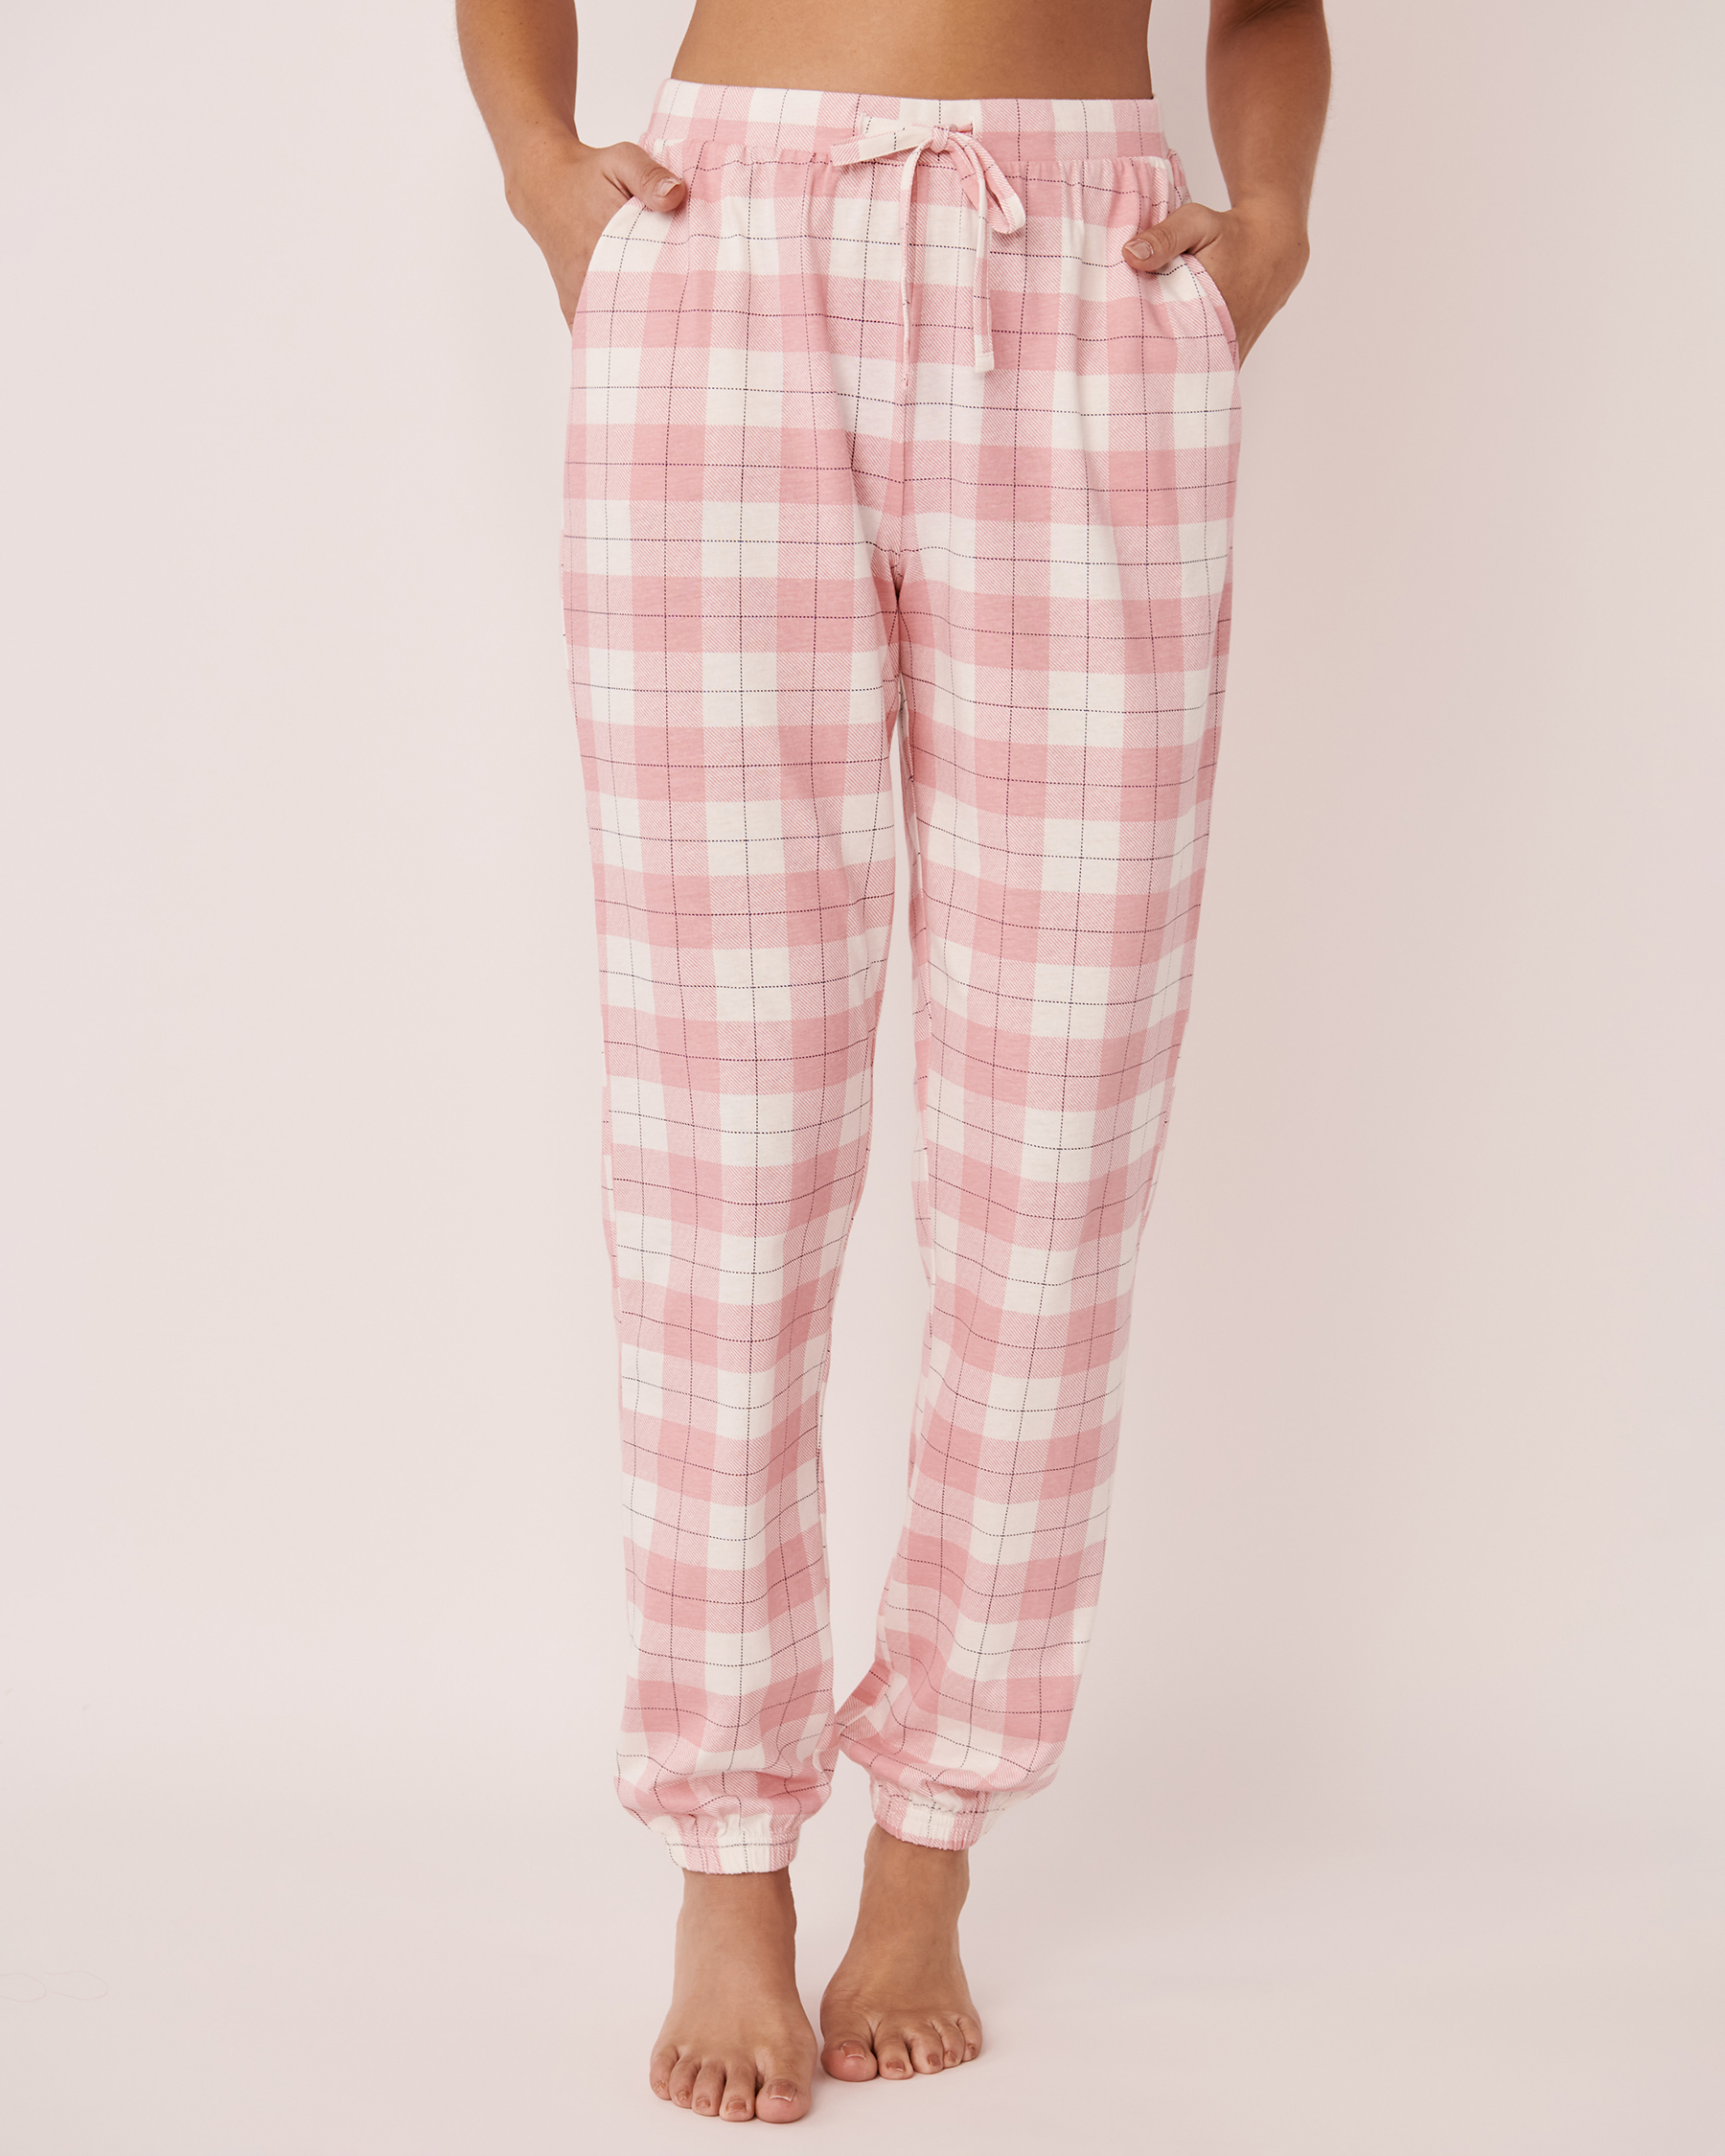 Cotton Pyjama Pants - Pink plaid